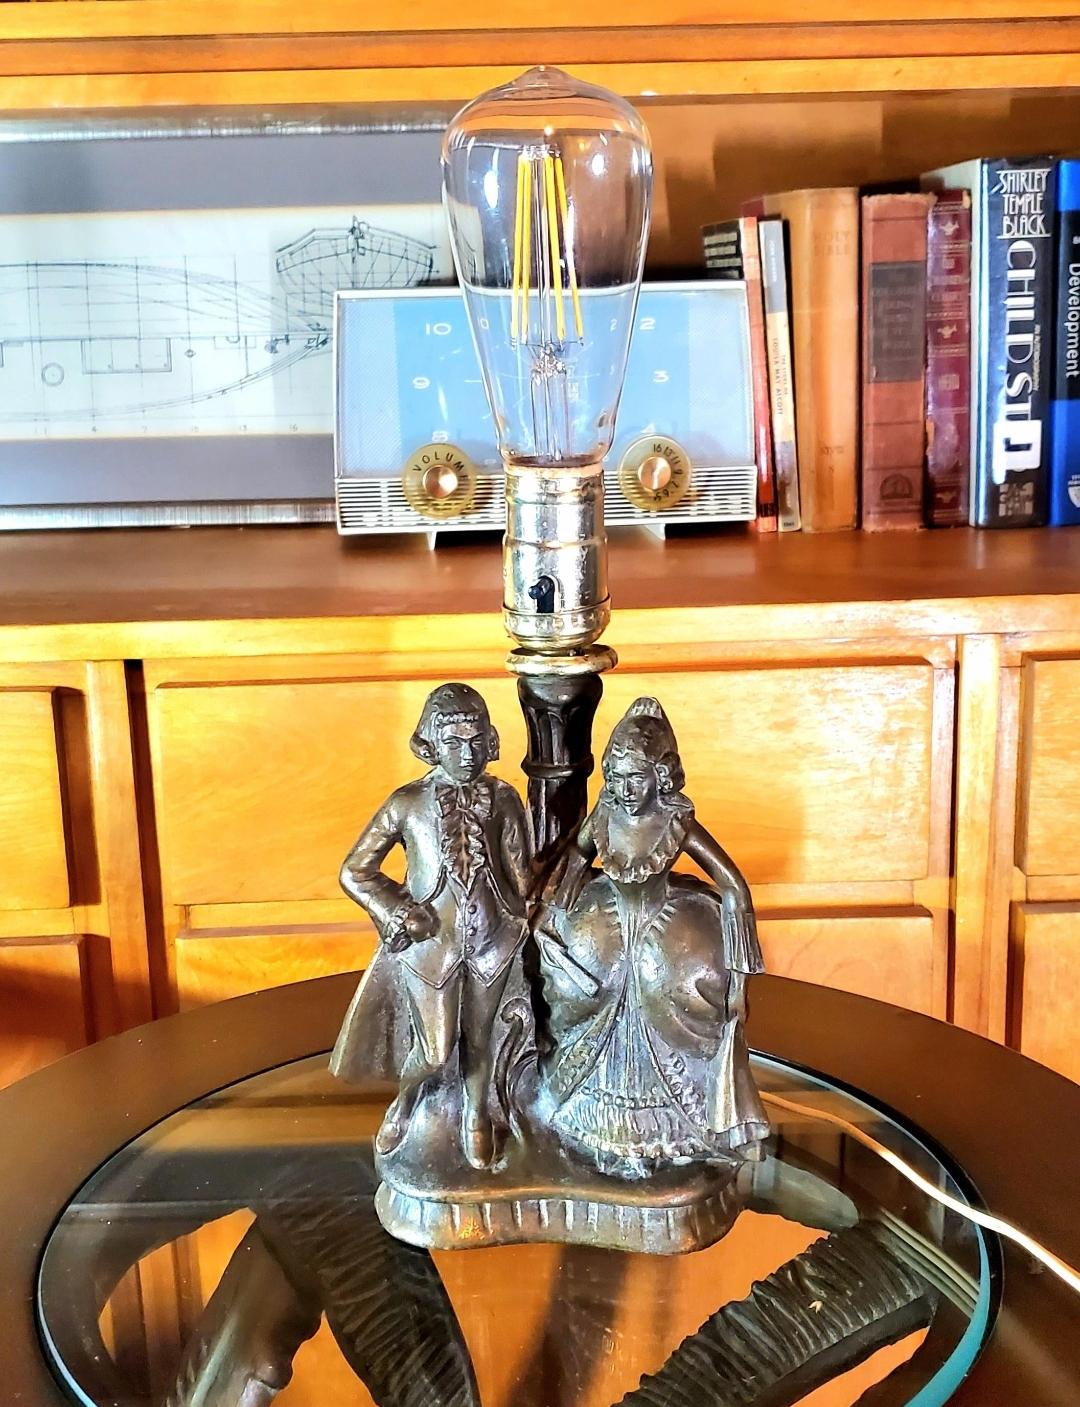 Absolut prächtige Vintage Authentic Japanese 'Victorian Couple' Boudoir Tischlampe.

Der Lampensockel wurde in Kanada 1920 - 1930 von Leviton 250W250V auf dem Gehäuse hergestellt. Drehknopf/Flat Paddle (alter Stil) ANTIQUE. Messinggehäuse mit